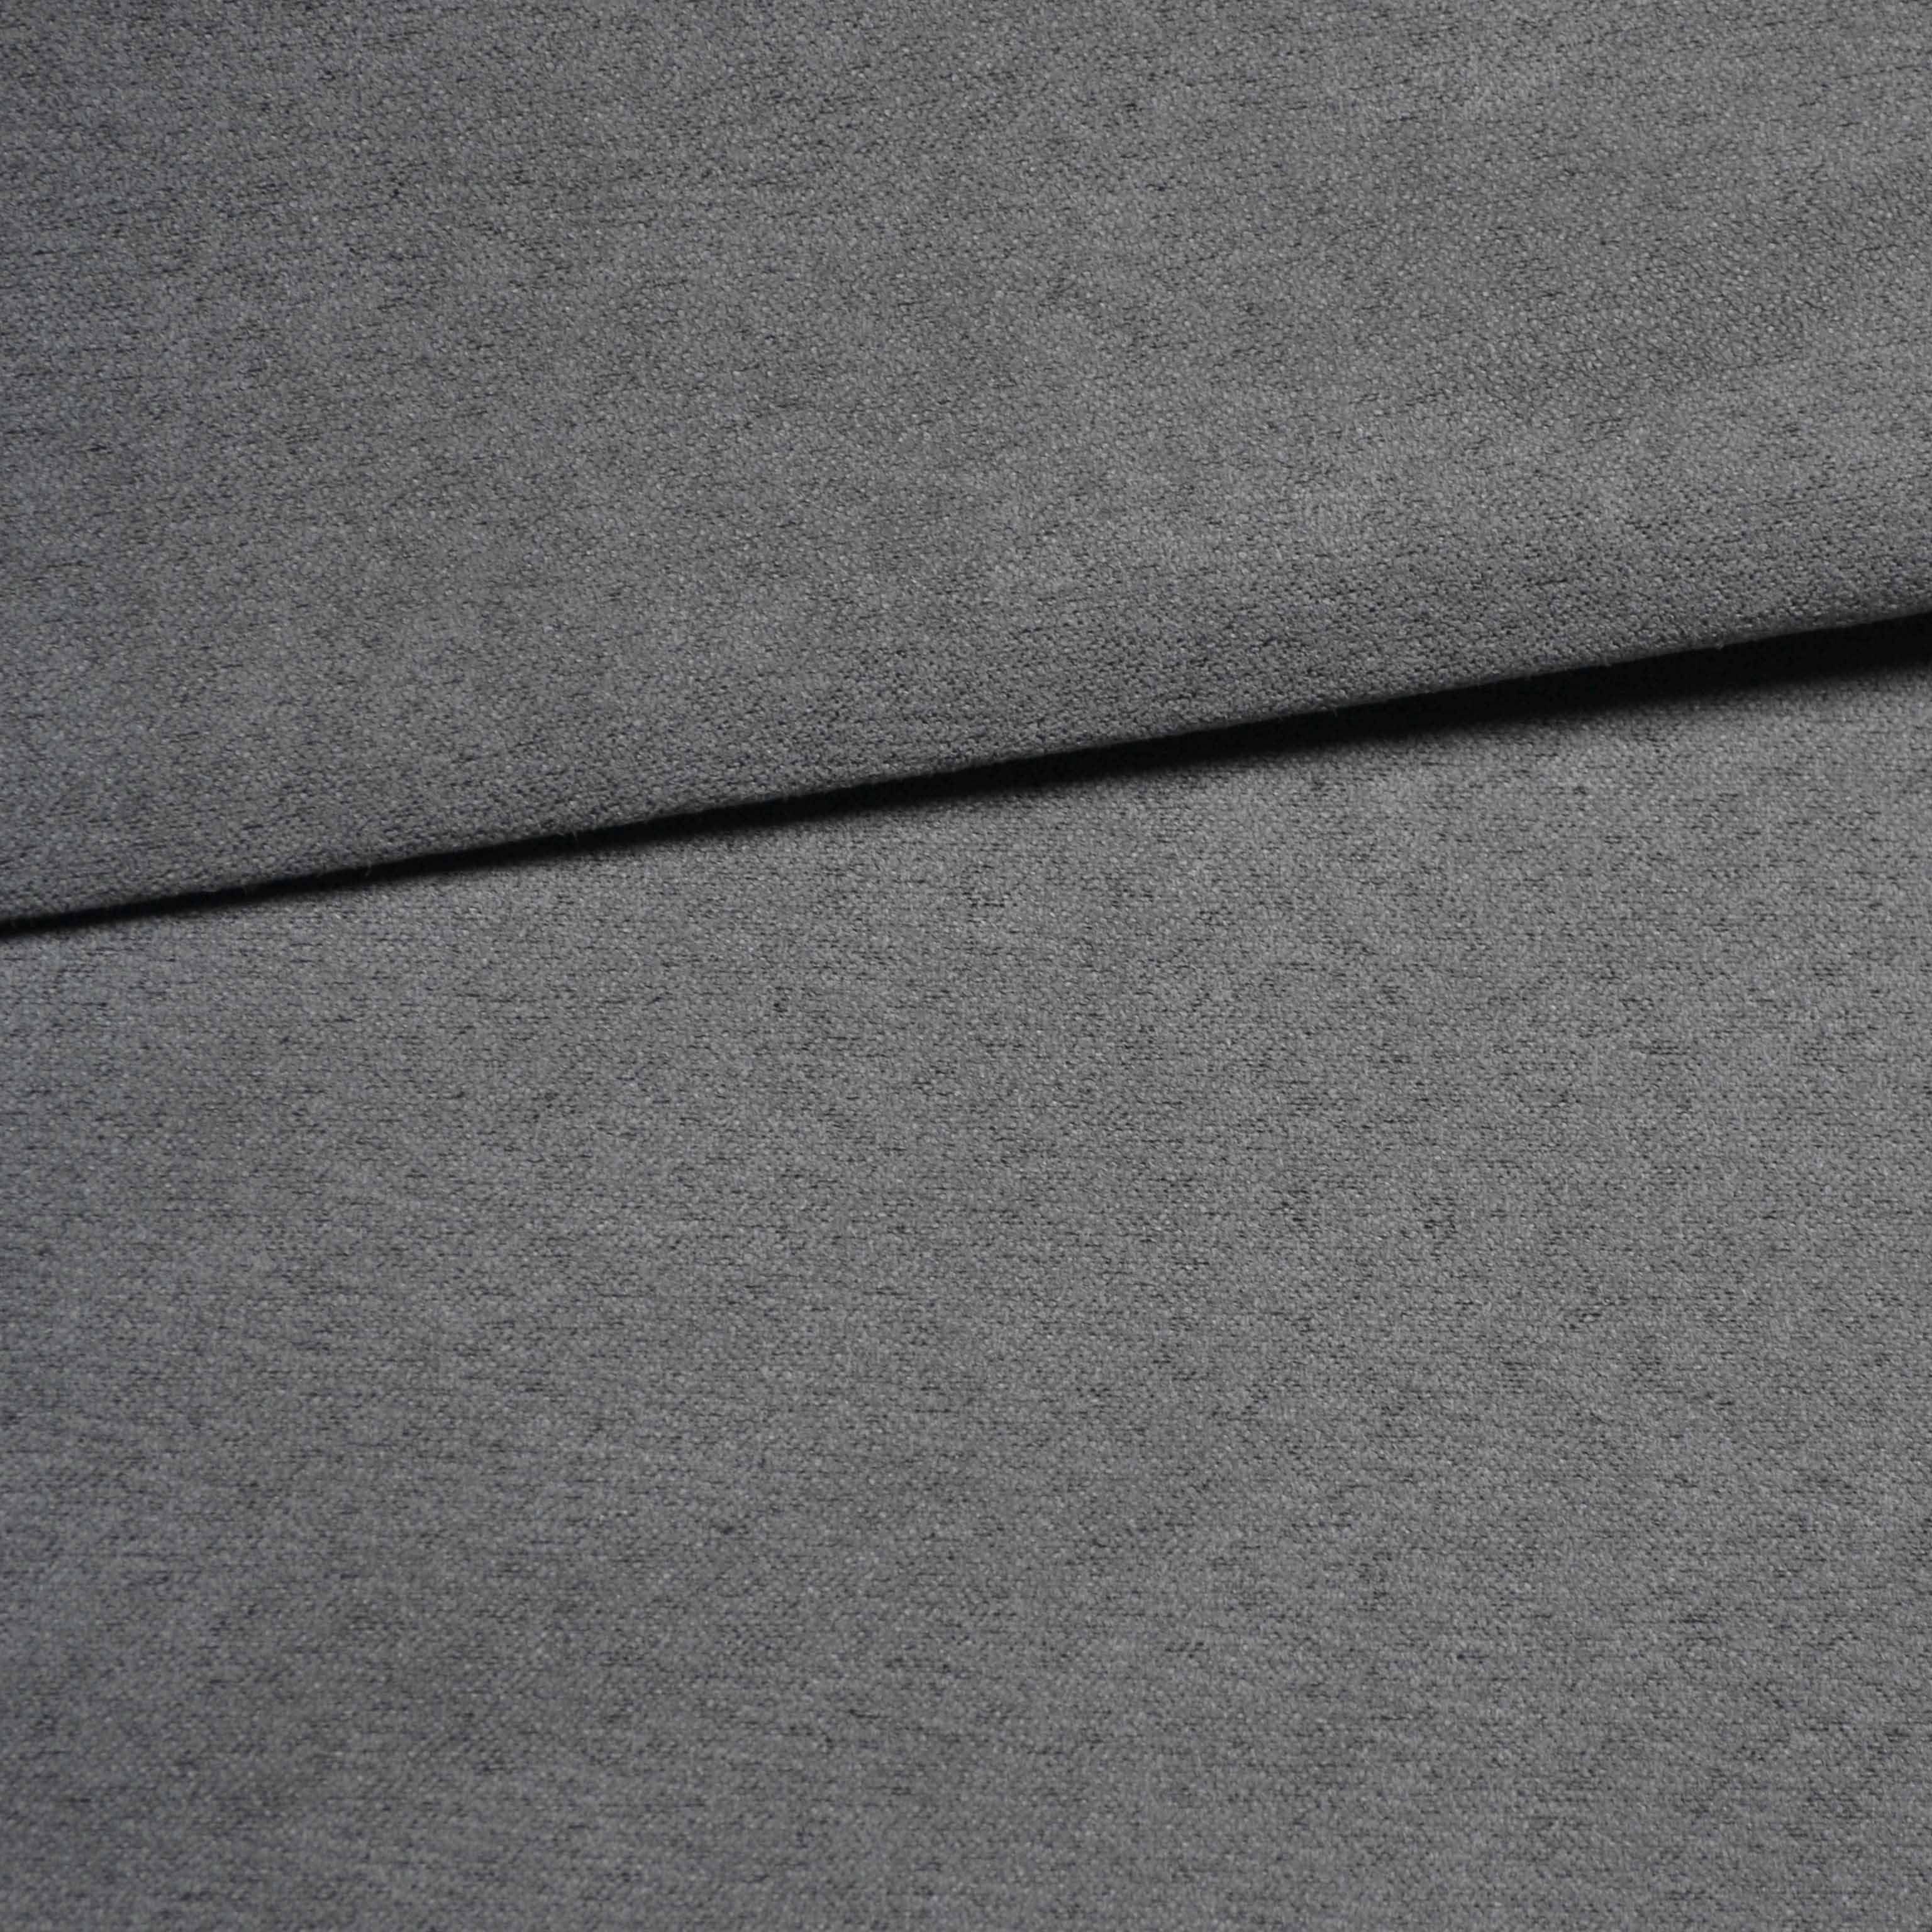 Țesătură pentru tapițerie- imitație din piele periată  gri închis